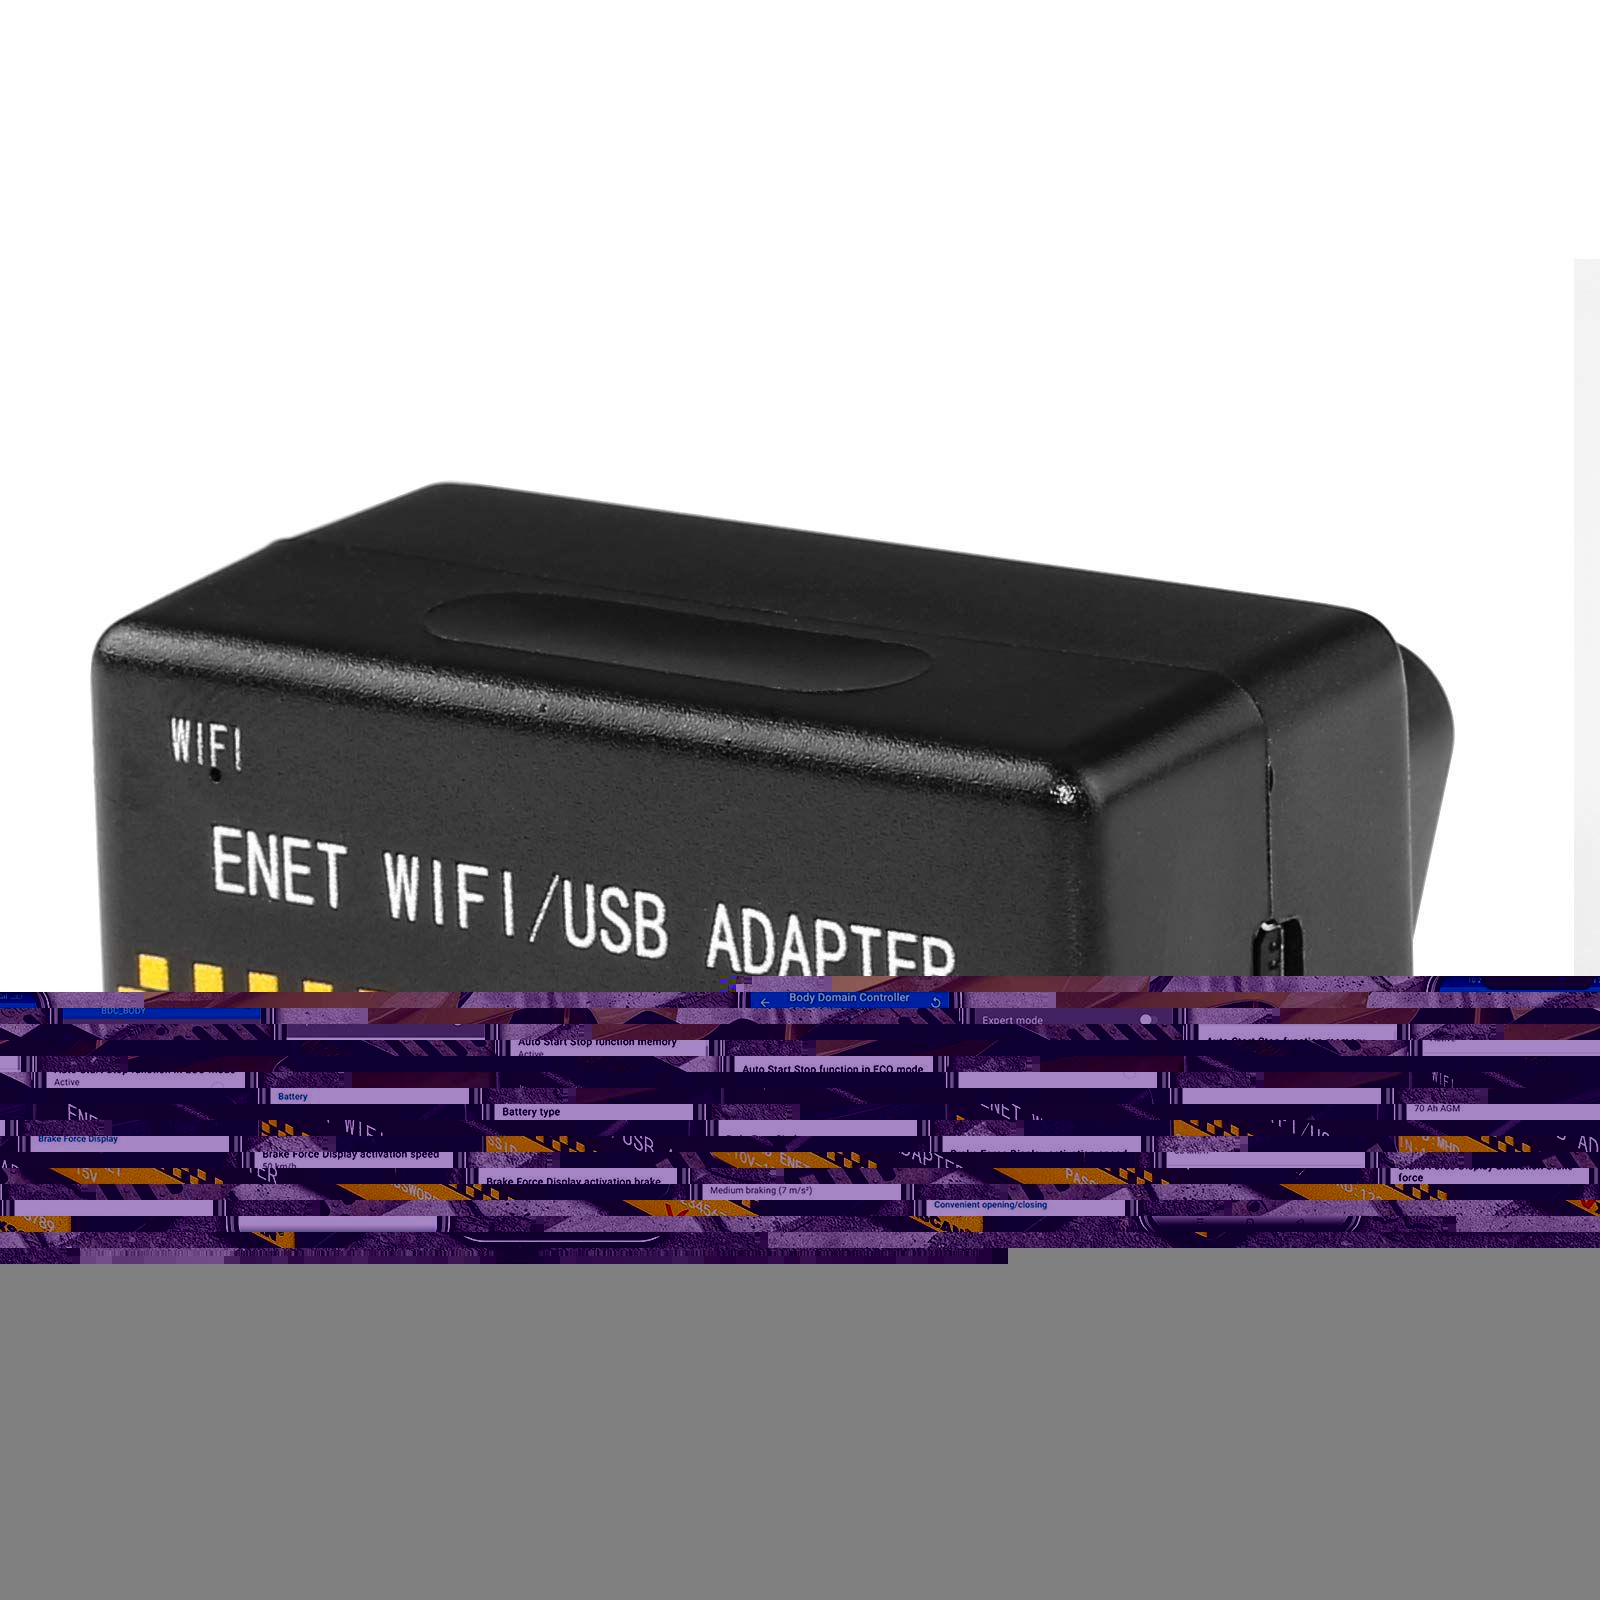 OBD ENET WIFI/USB Adapter